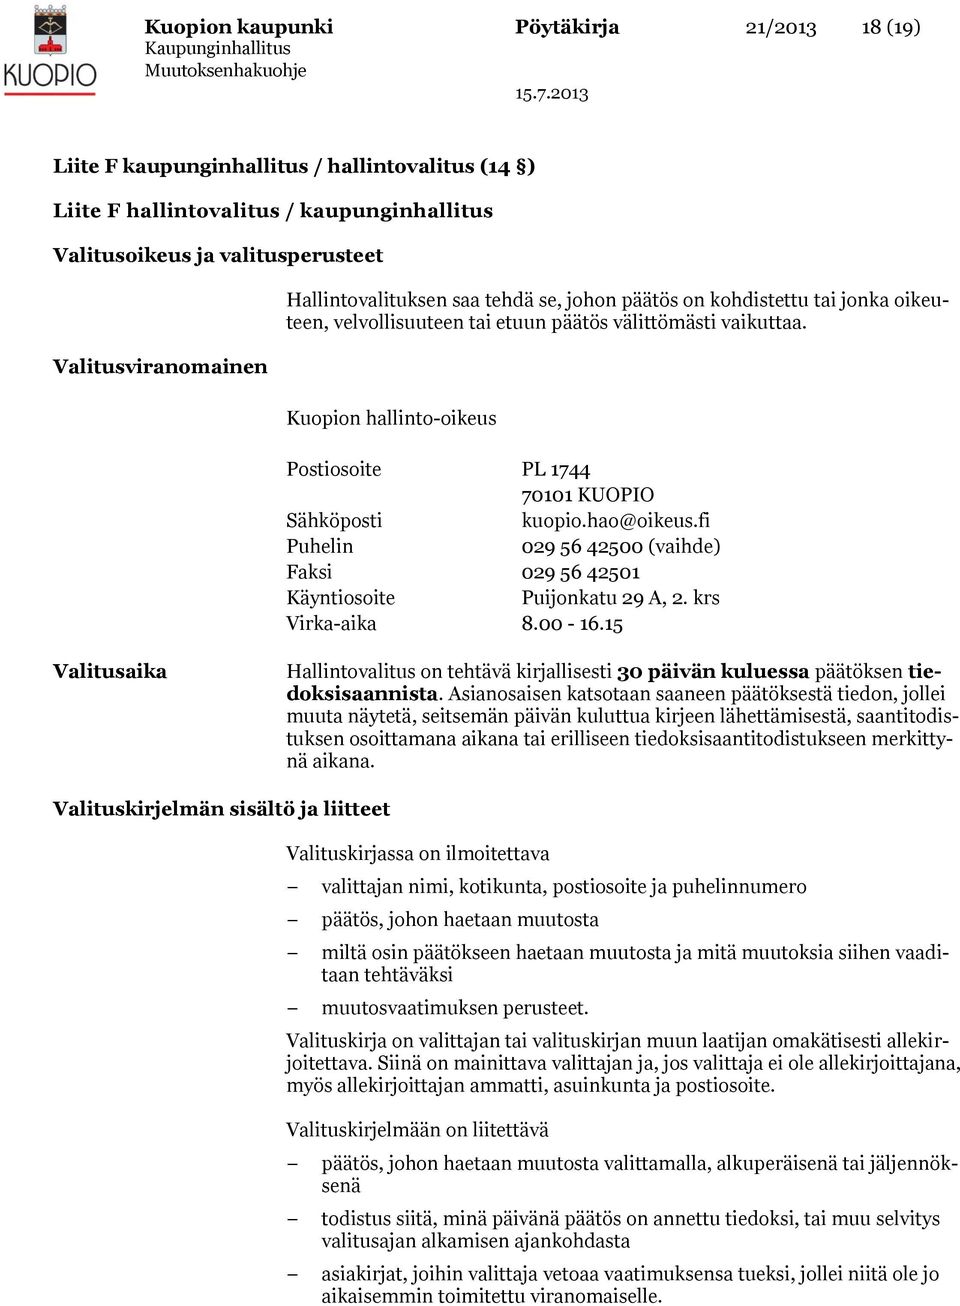 Kuopion hallinto-oikeus Postiosoite PL 1744 70101 KUOPIO Sähköposti kuopio.hao@oikeus.fi Puhelin 029 56 42500 (vaihde) Faksi 029 56 42501 Käyntiosoite Puijonkatu 29 A, 2. krs Virka-aika 8.00-16.